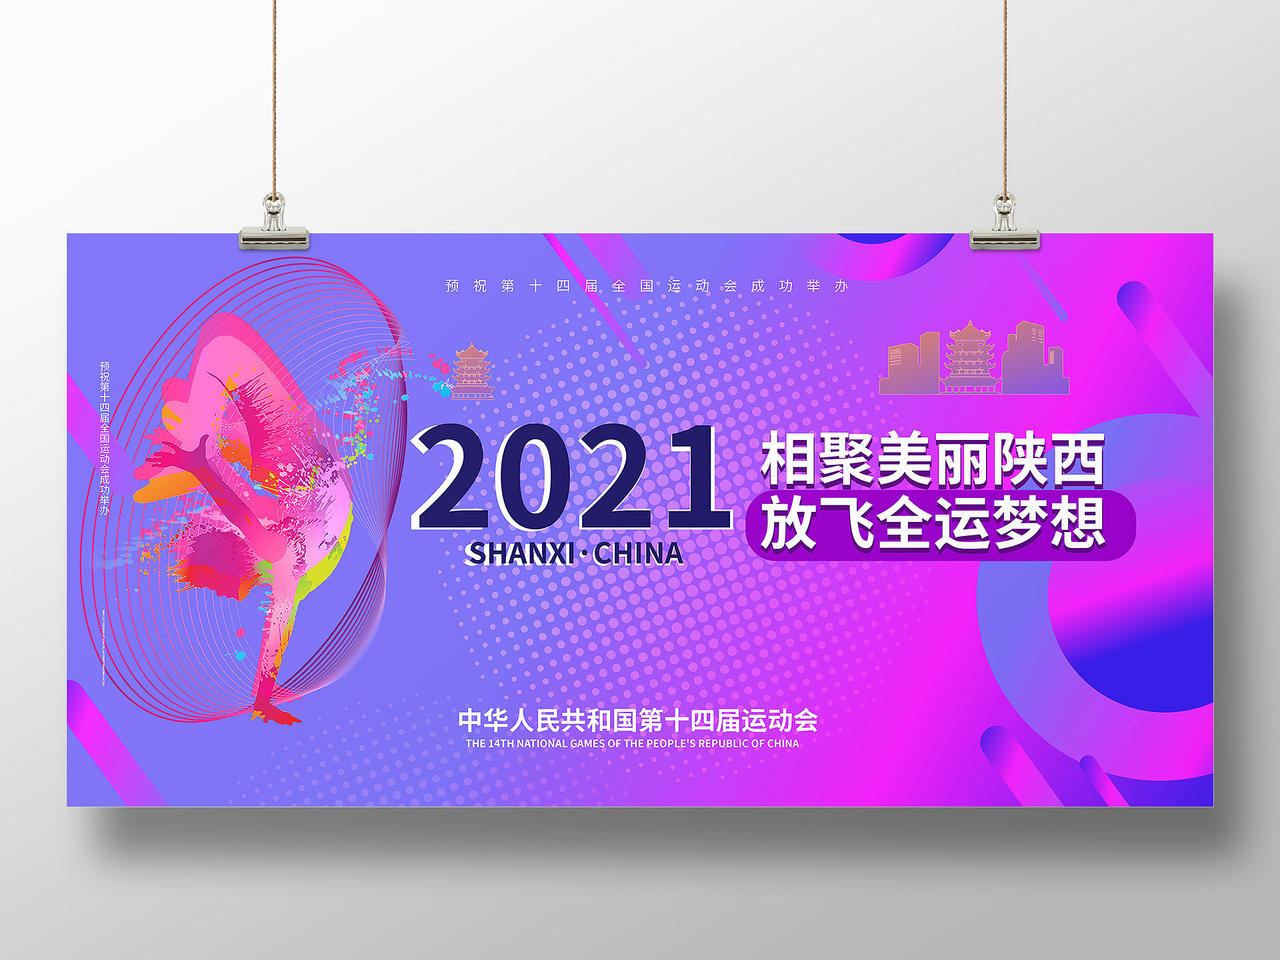 紫红色背景创意简洁2021相聚美丽陕西放飞全运梦想展板设计十四运